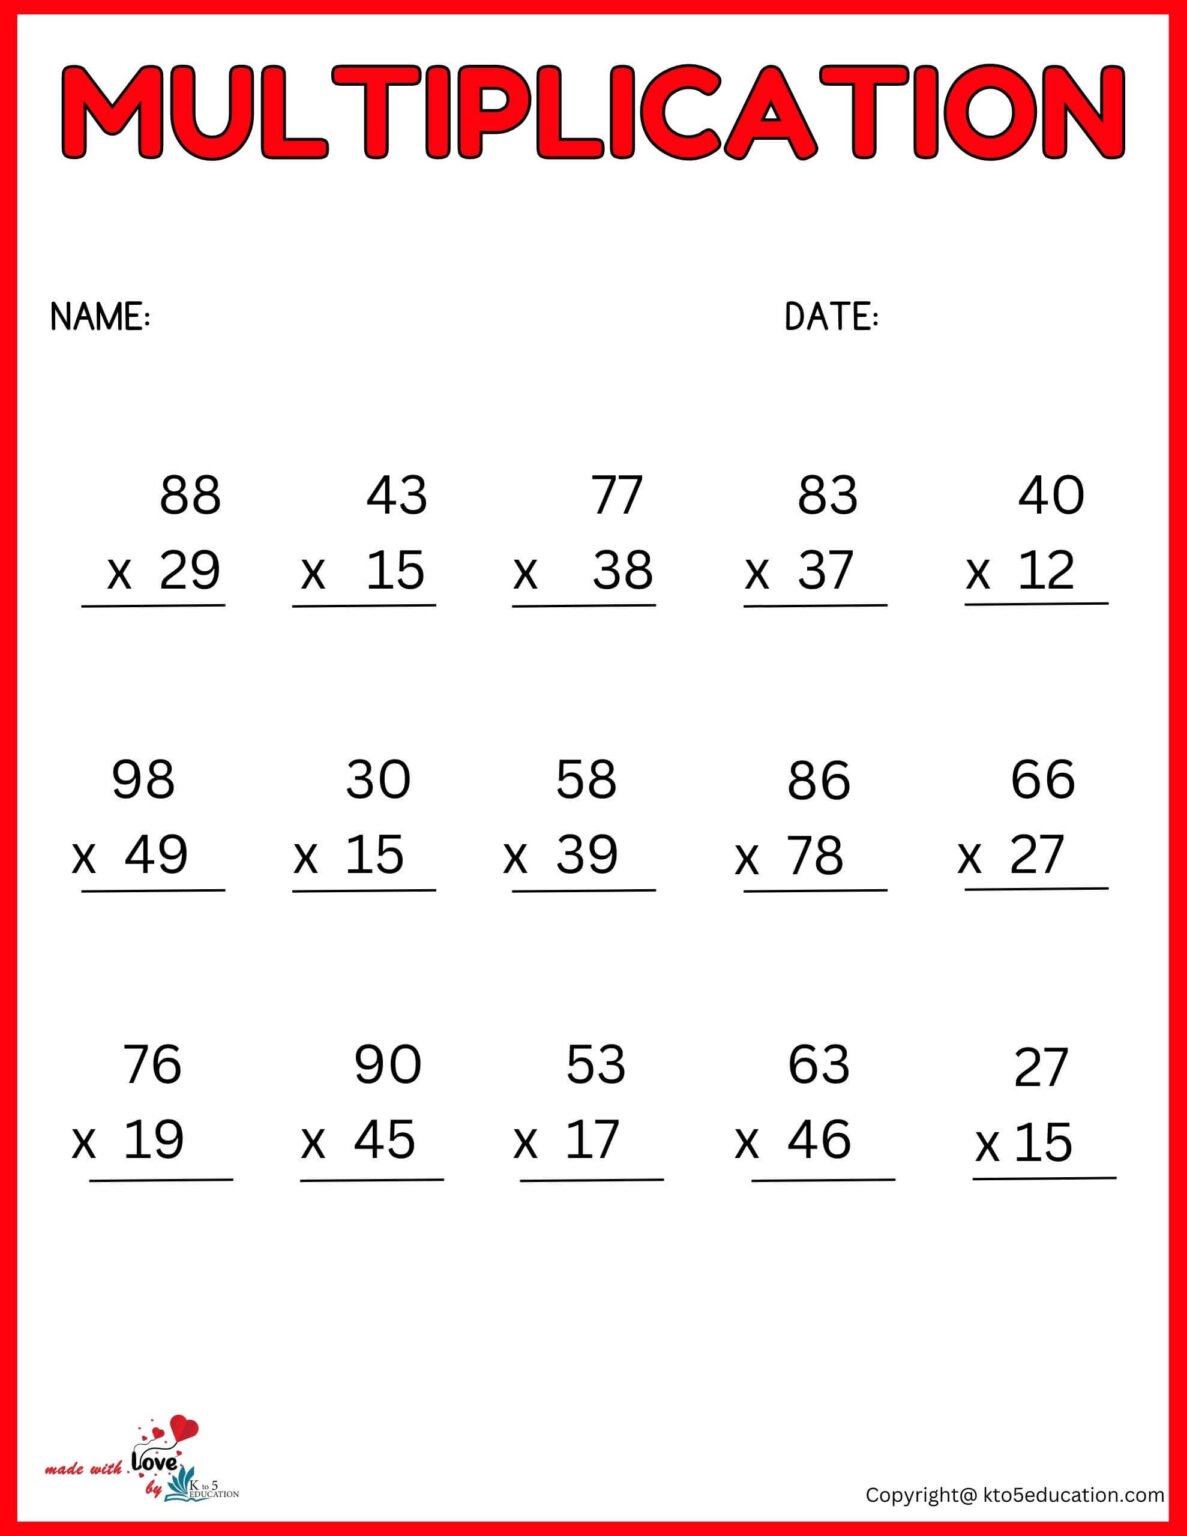 Multiplication Worksheet For 3 S